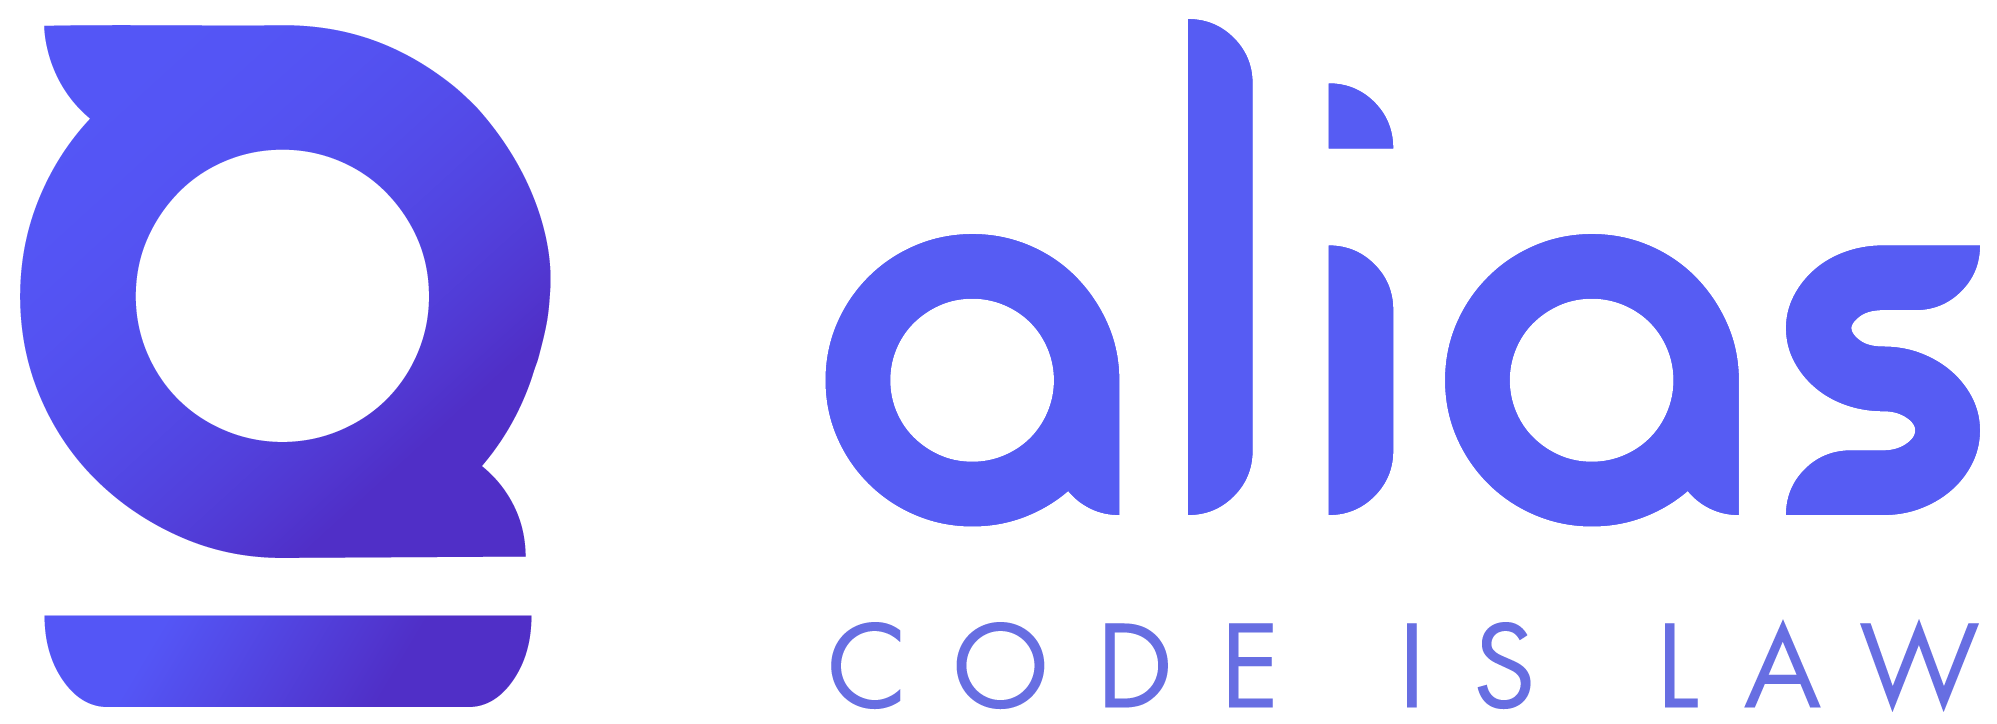 Logo Code is law - Alias